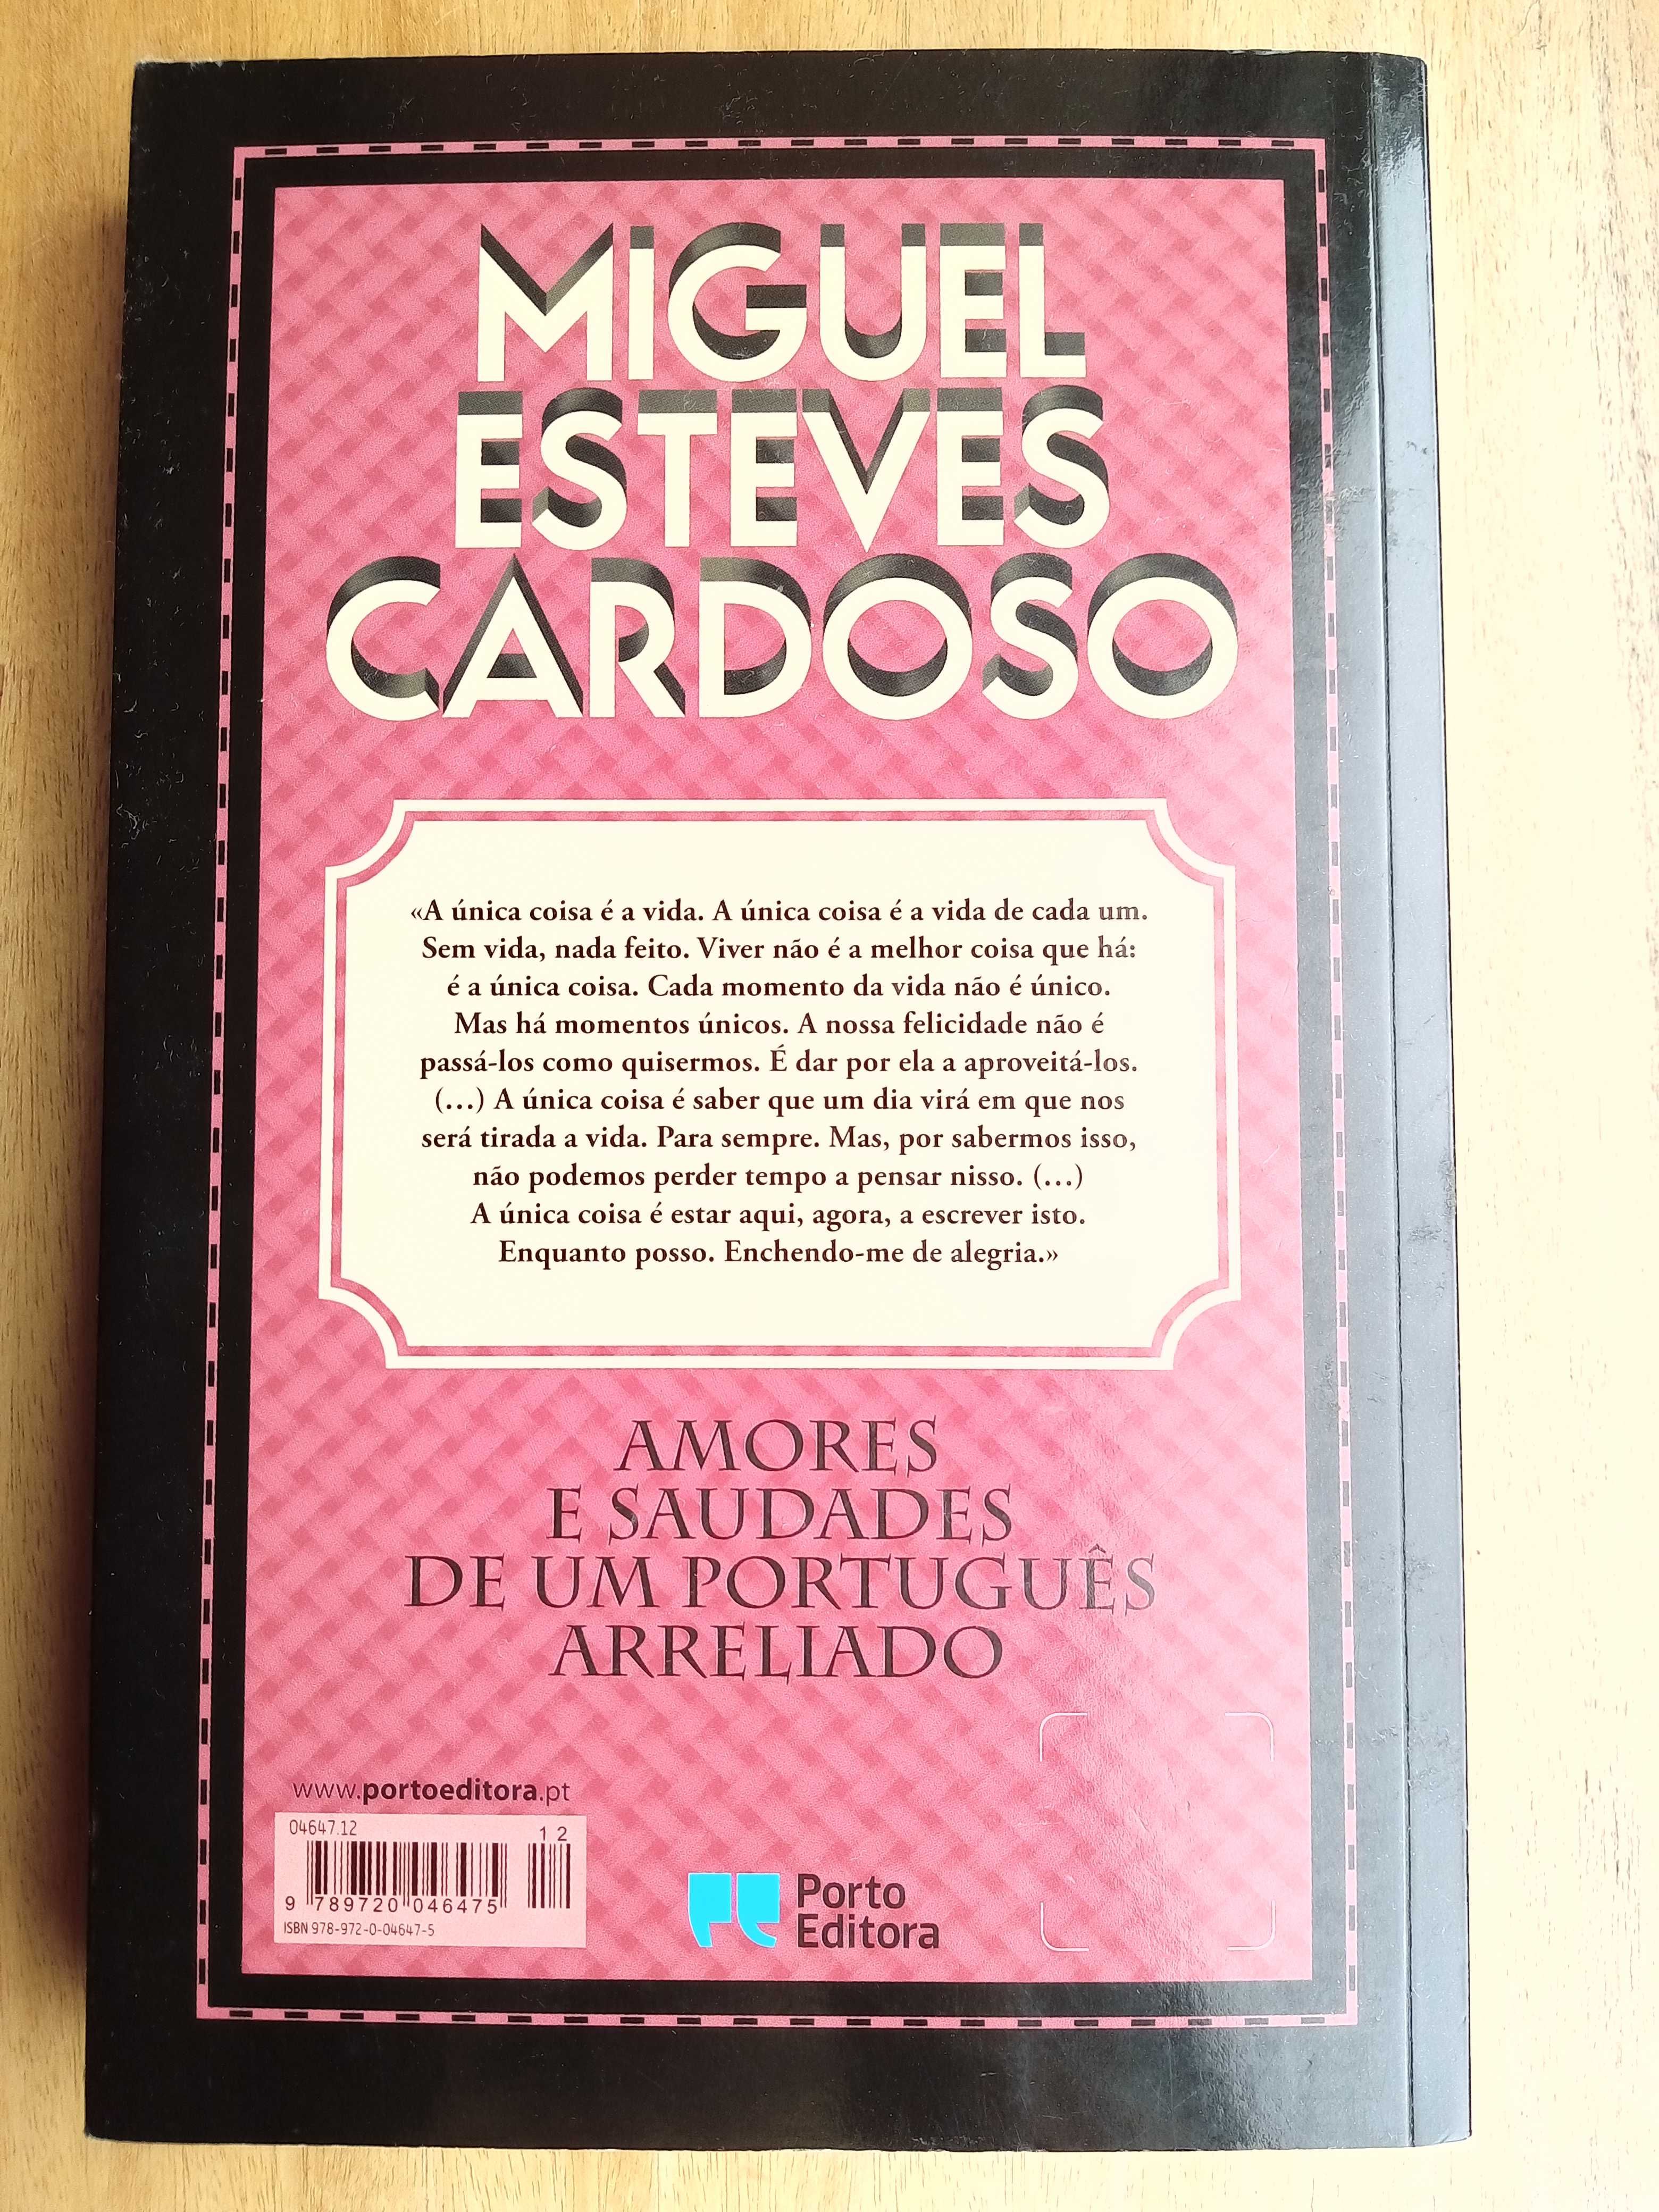 Amores e saudades de um português arreliado, Miguel Esteves Cardoso